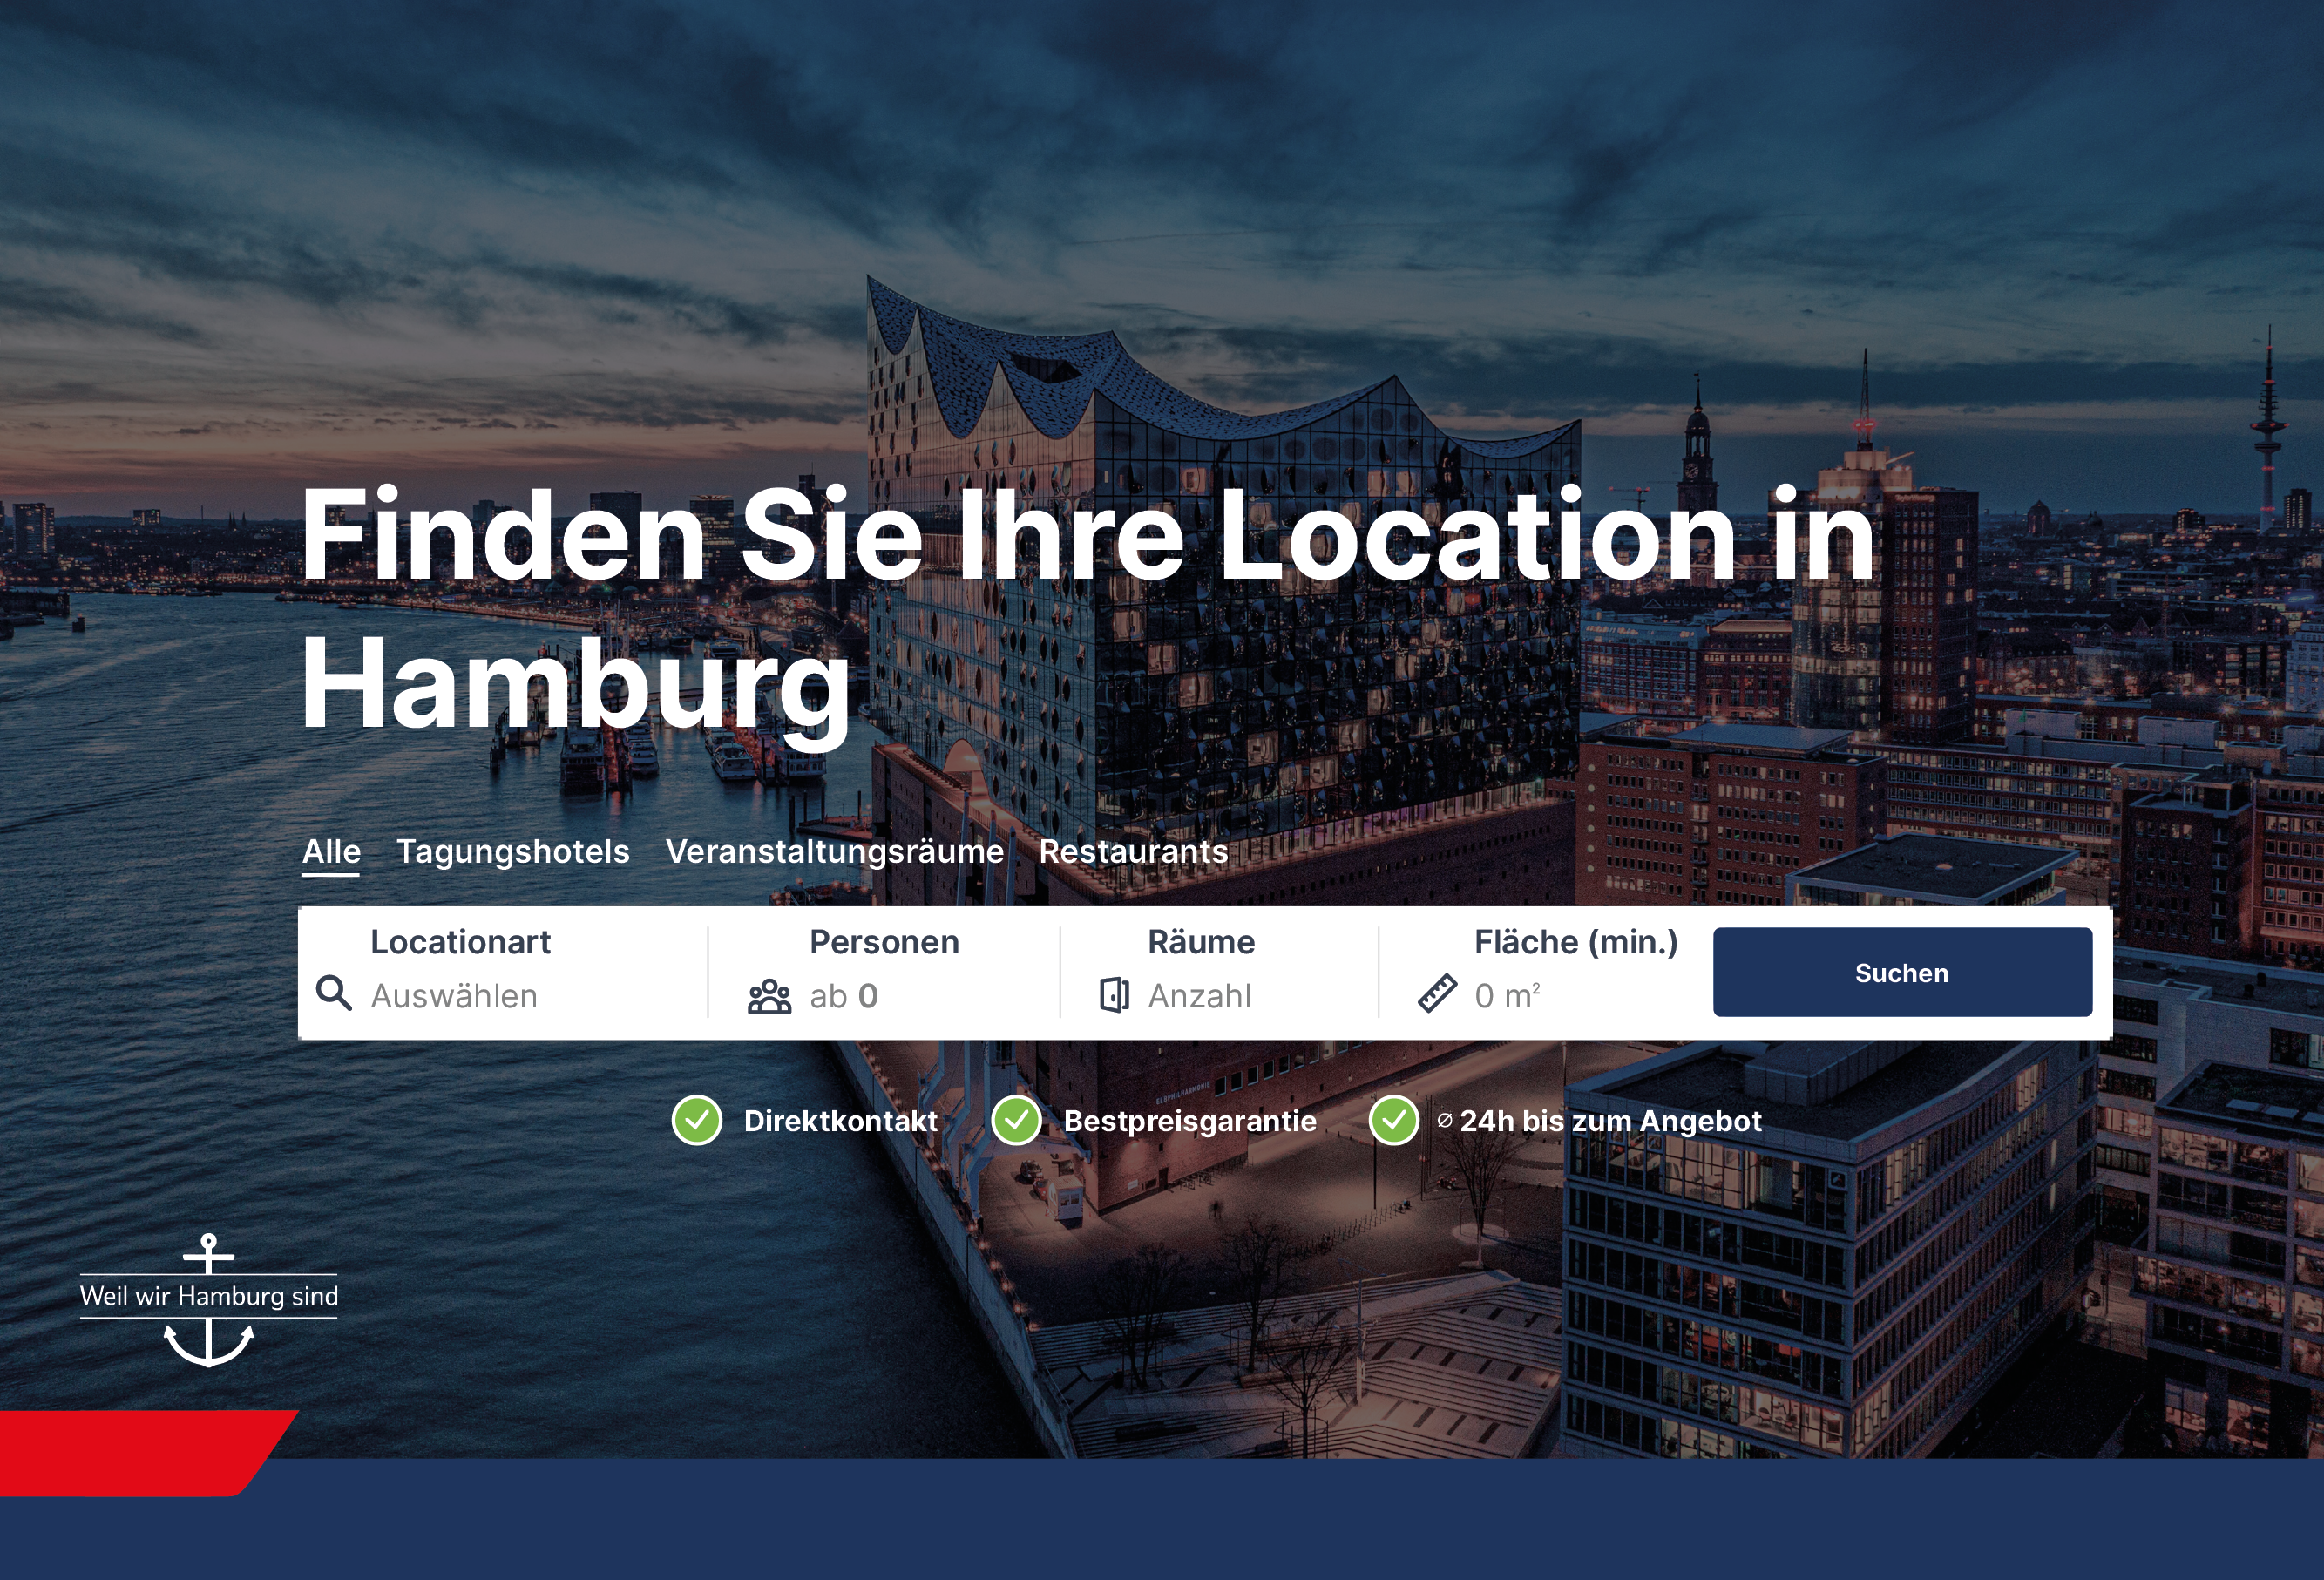 Eventlocations.com stellt Plattform zur Vermarktung von Veranstaltungslocations für das Hamburg Convention Bureau zur Verfügung